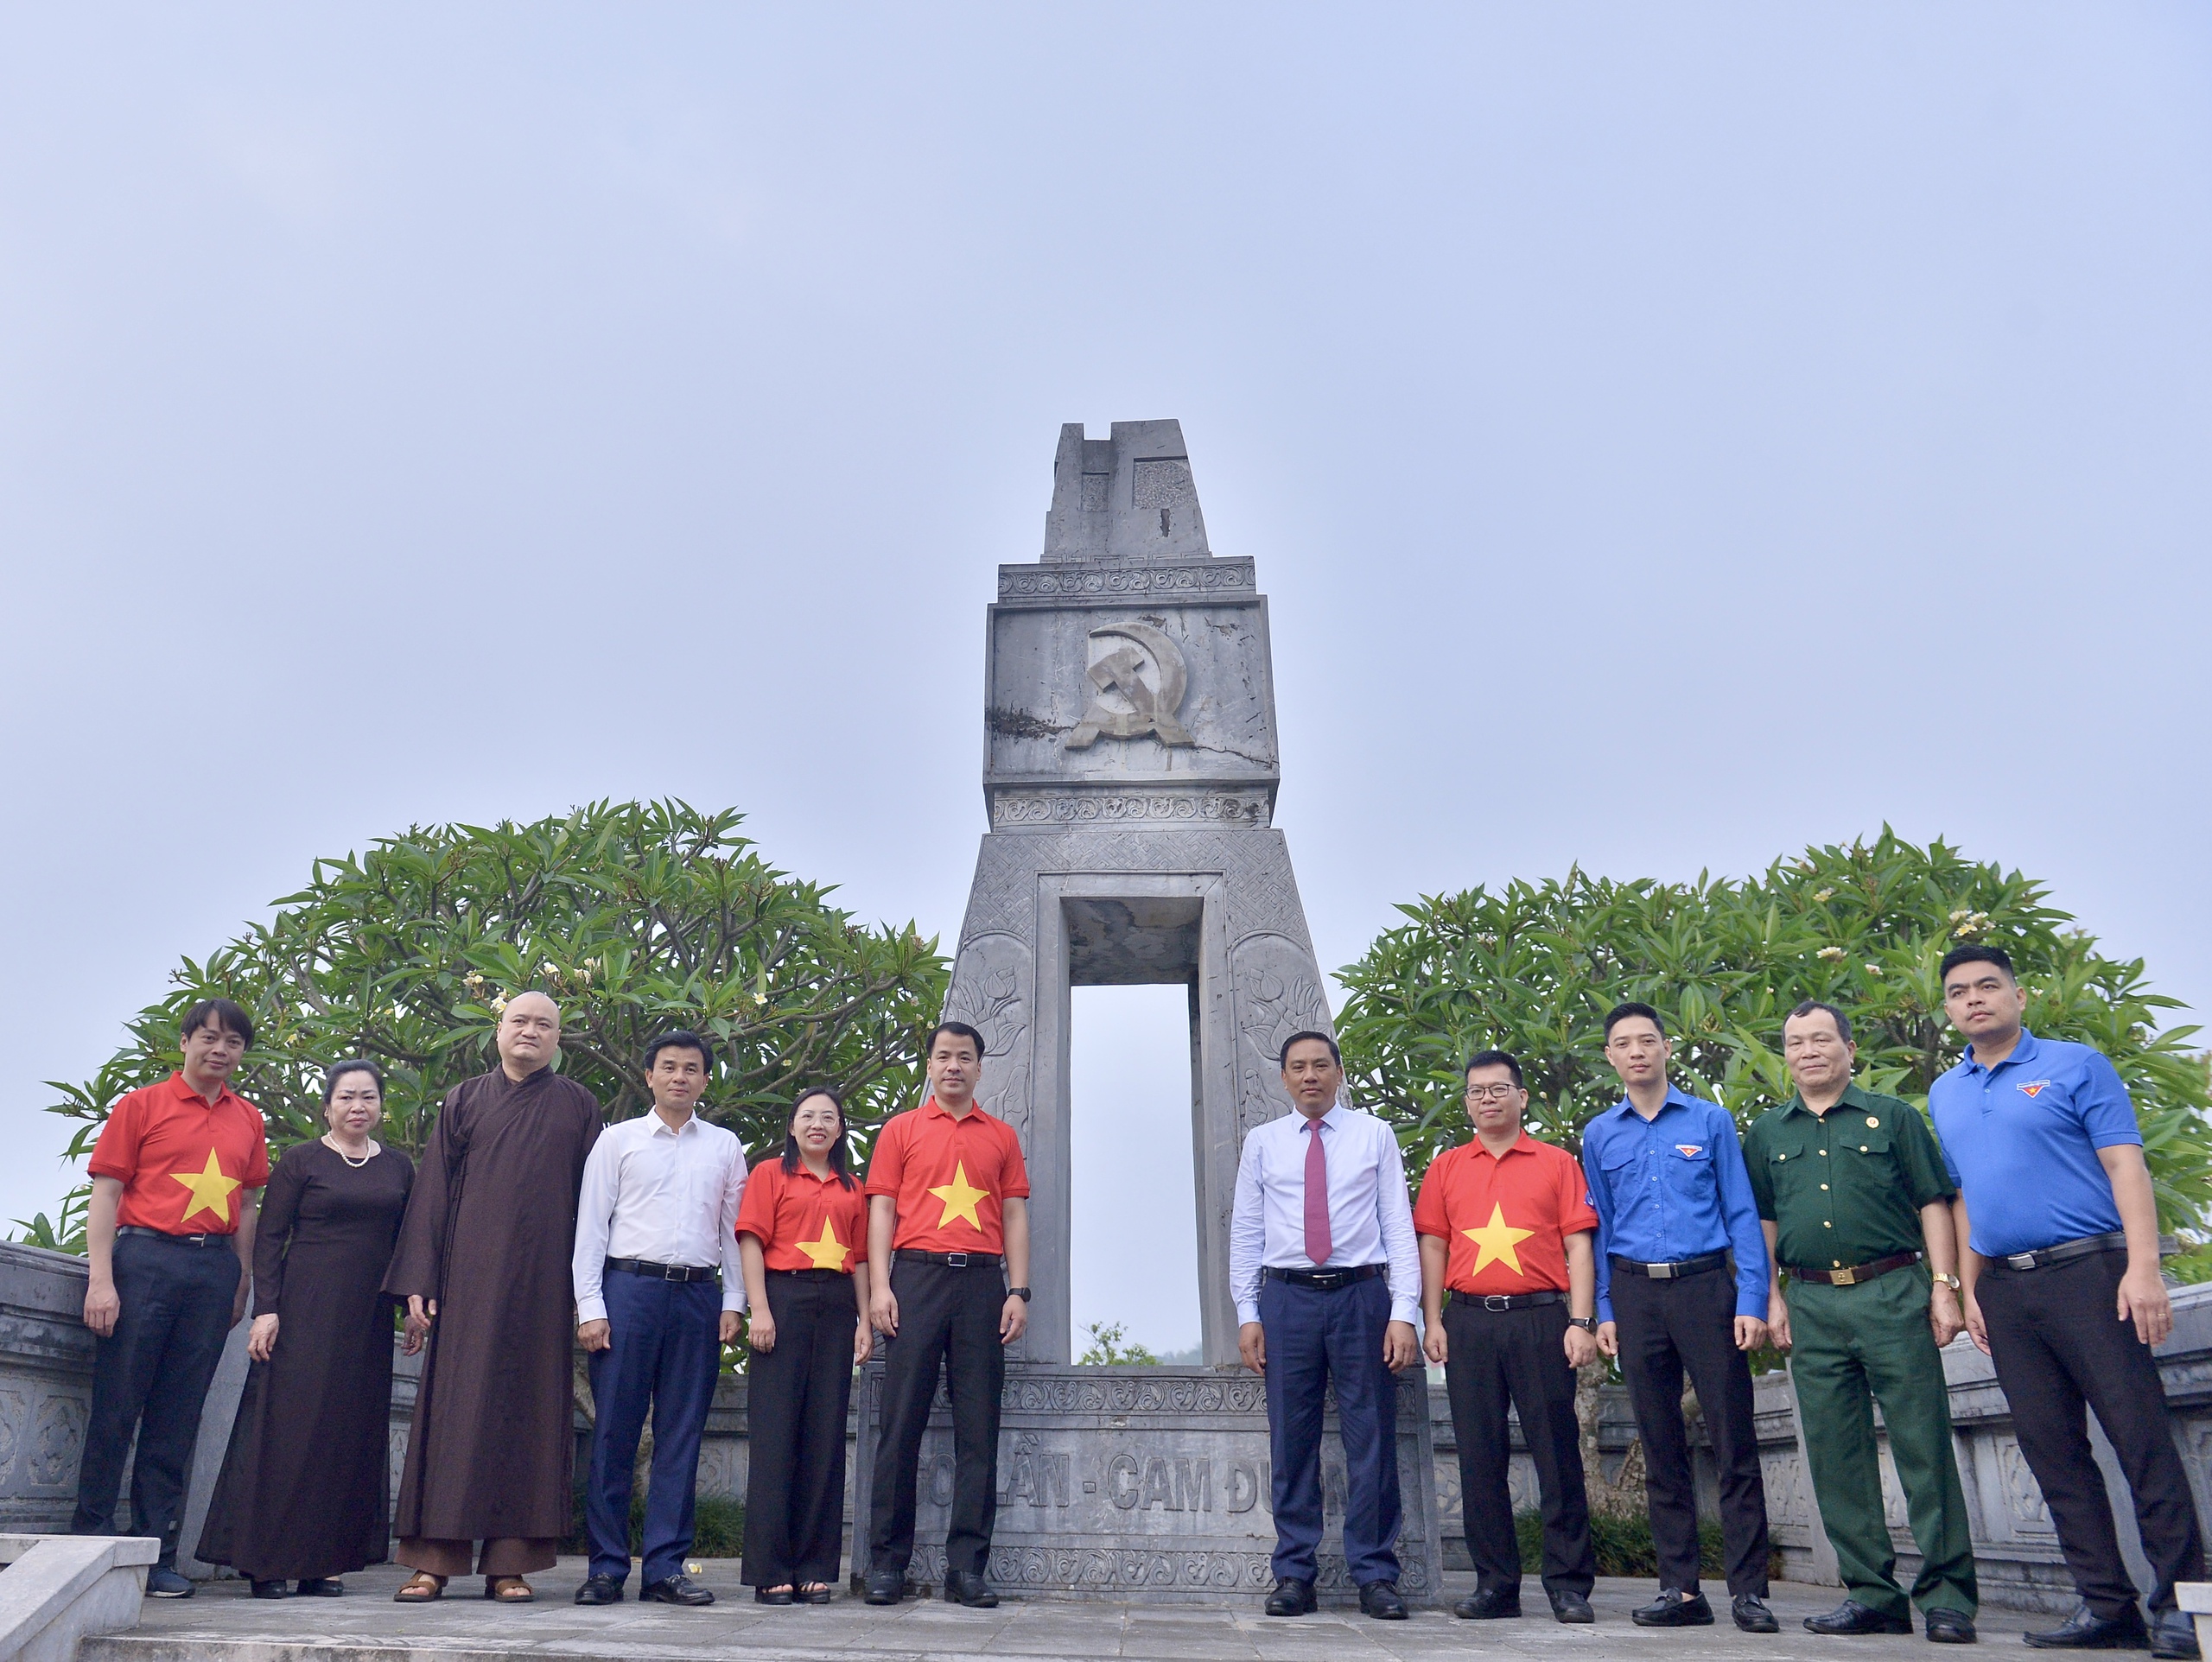 Bí thư T.Ư Đoàn Ngô Văn Cương và Phó bí thư Tỉnh ủy Lào Cai Hoàng Giang cùng các đại biểu chụp ảnh lưu niệm tại Khu di tích cách mạng Soi Lần